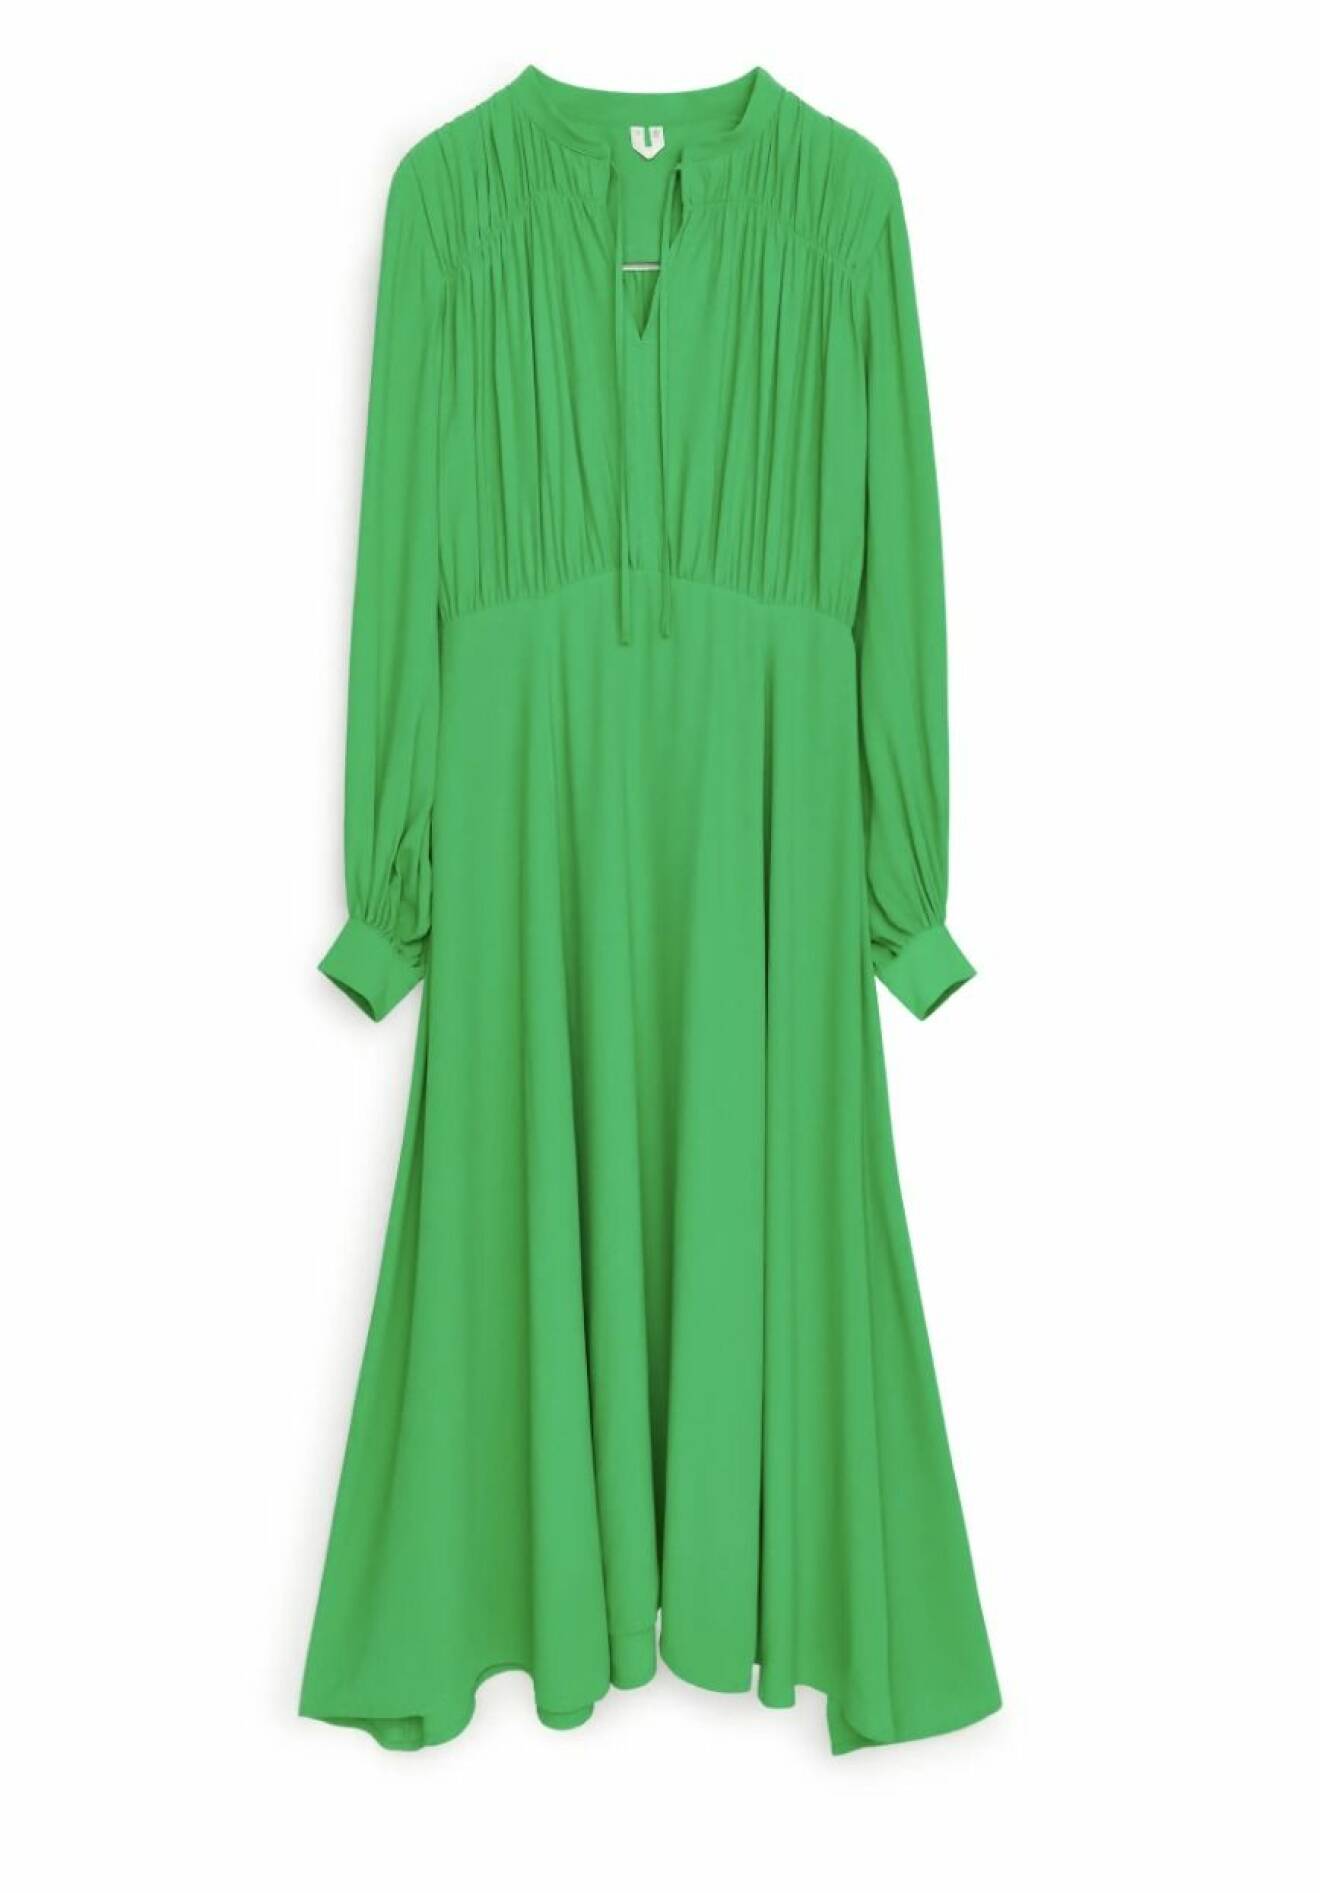 grön klänning från arket